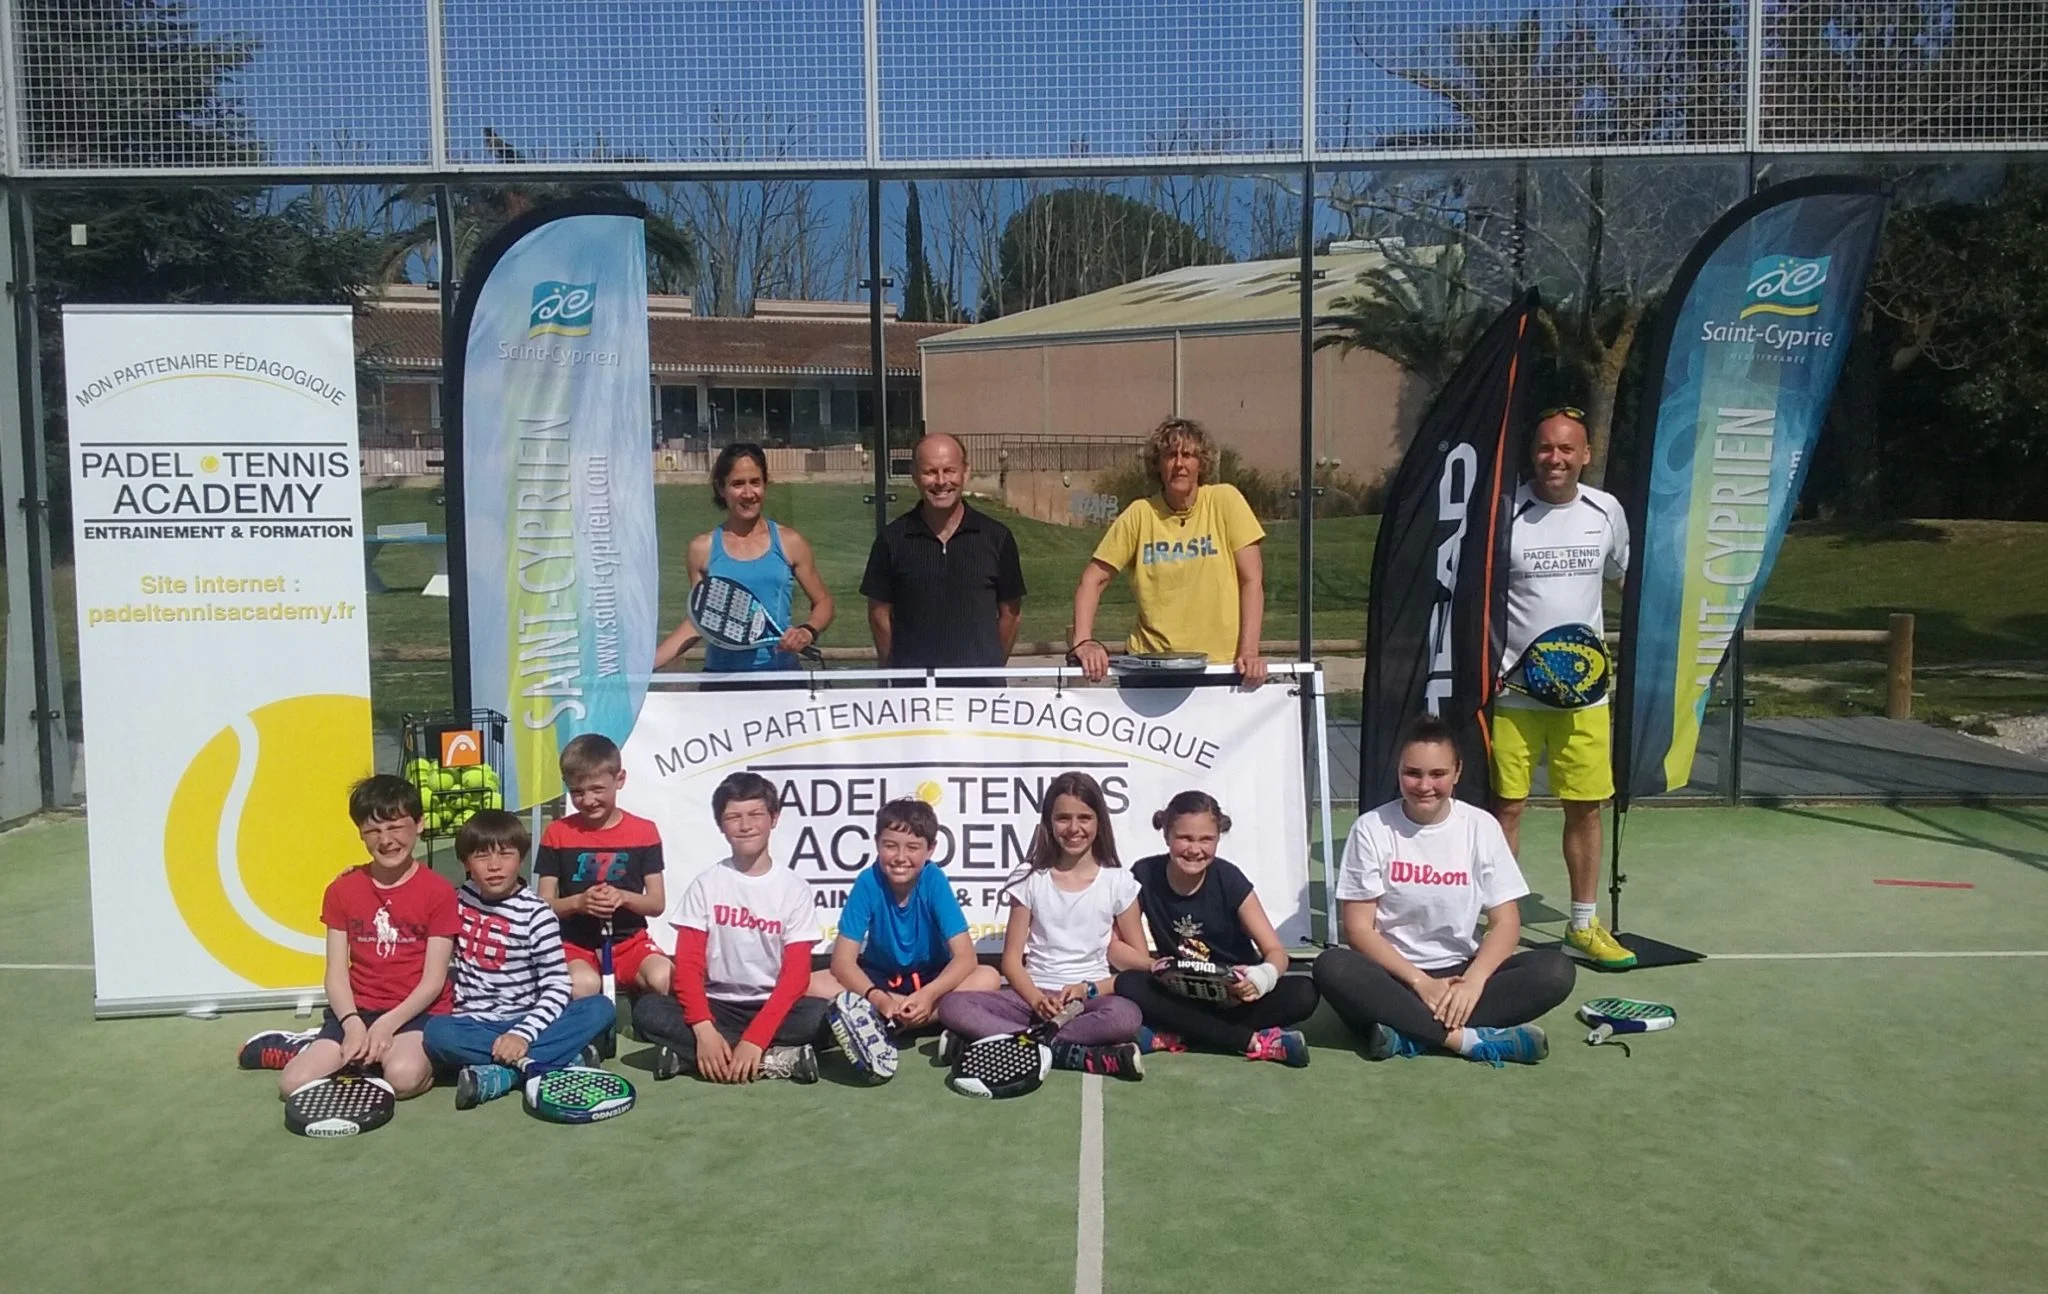 Saint Cyprien e Tarascon con Padel Tennis Academy